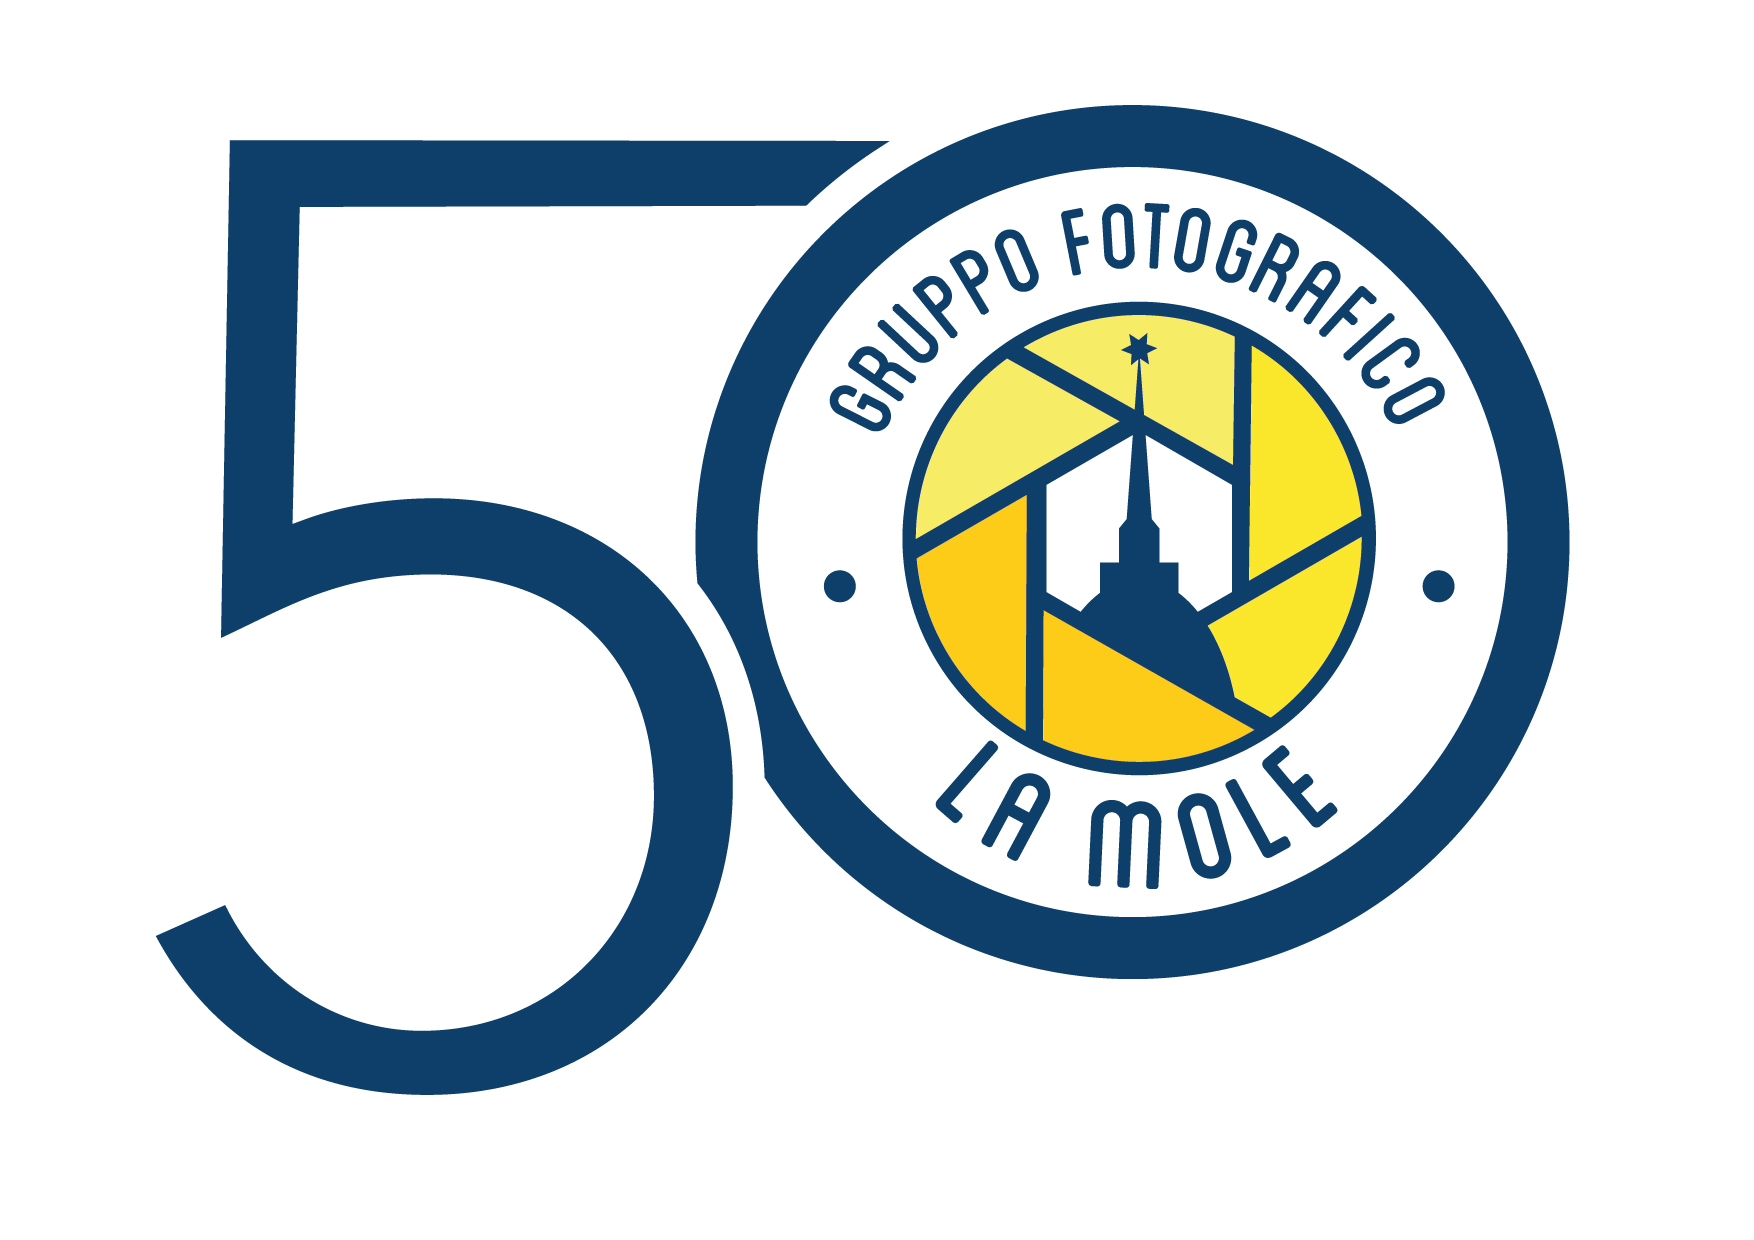 50 anni di passione fotografica